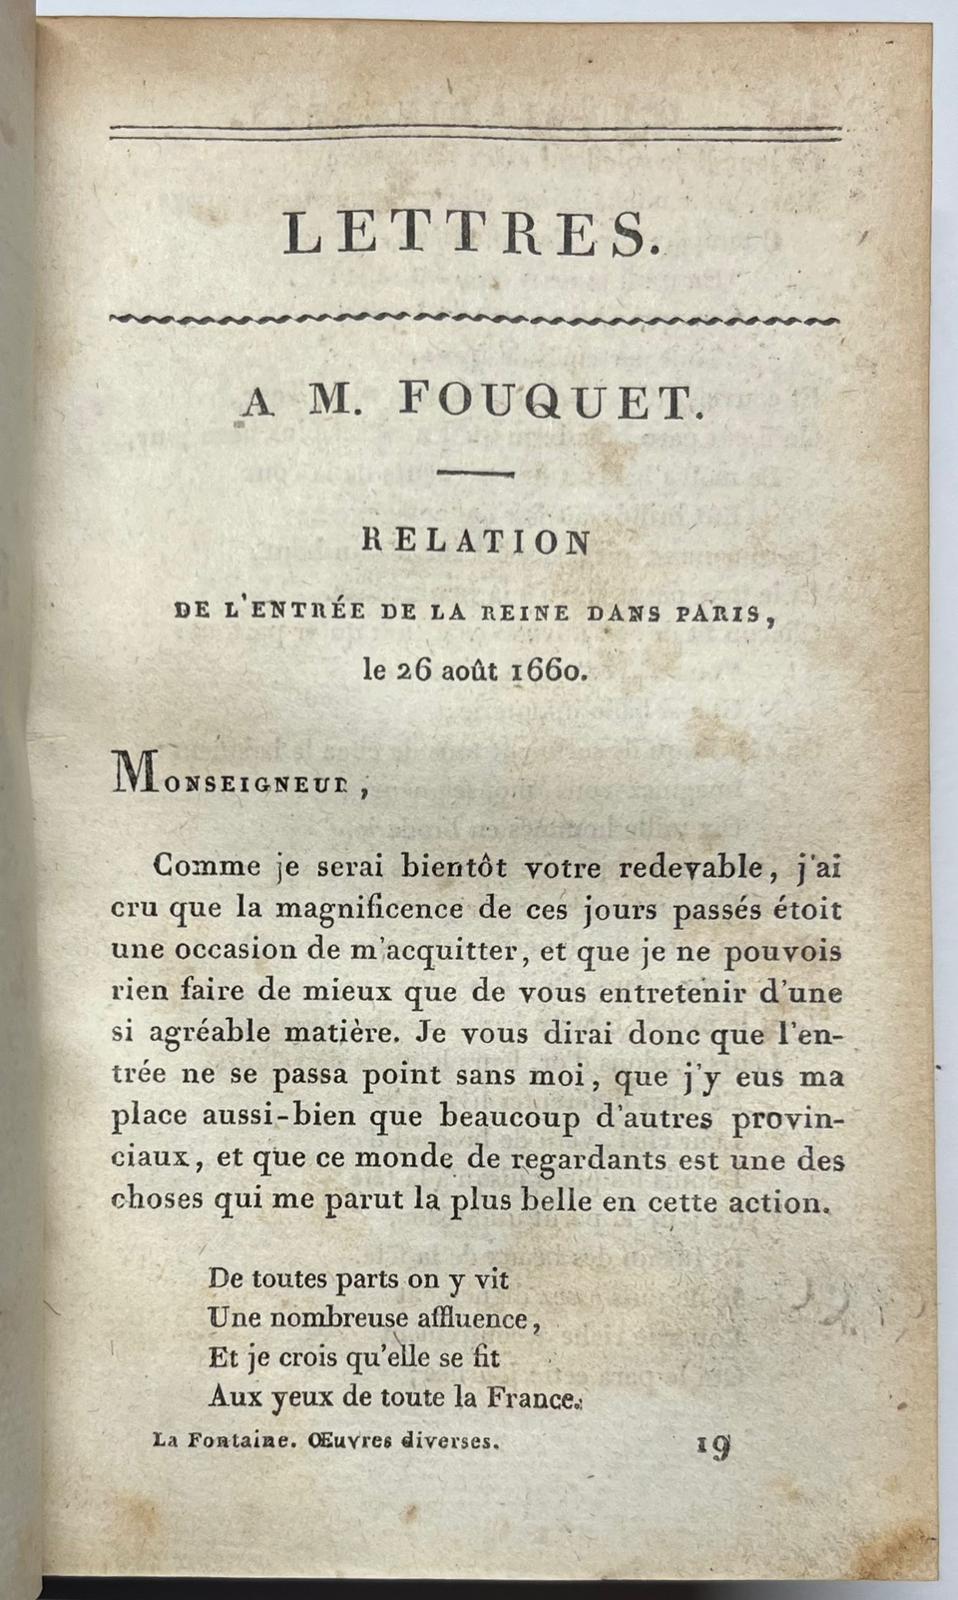 La Fontaine, 1809, French | Oeuvres de La Fontaine, Paris, Imprimerie de Mame, Frères, 1809, 412 pp.